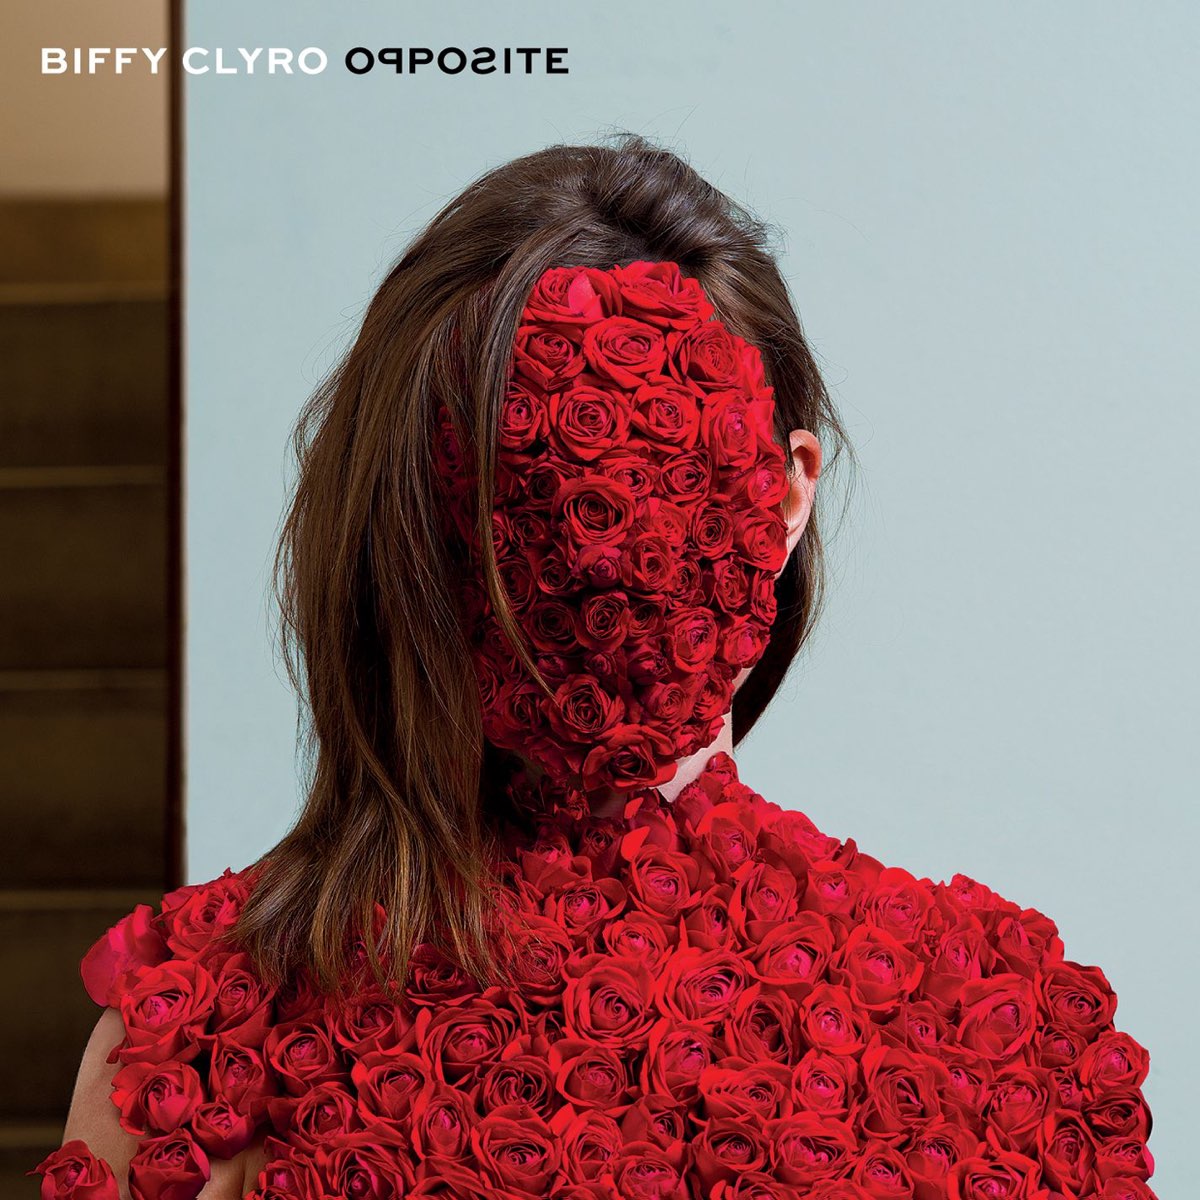 Biffy Clyro Opposite cover artwork